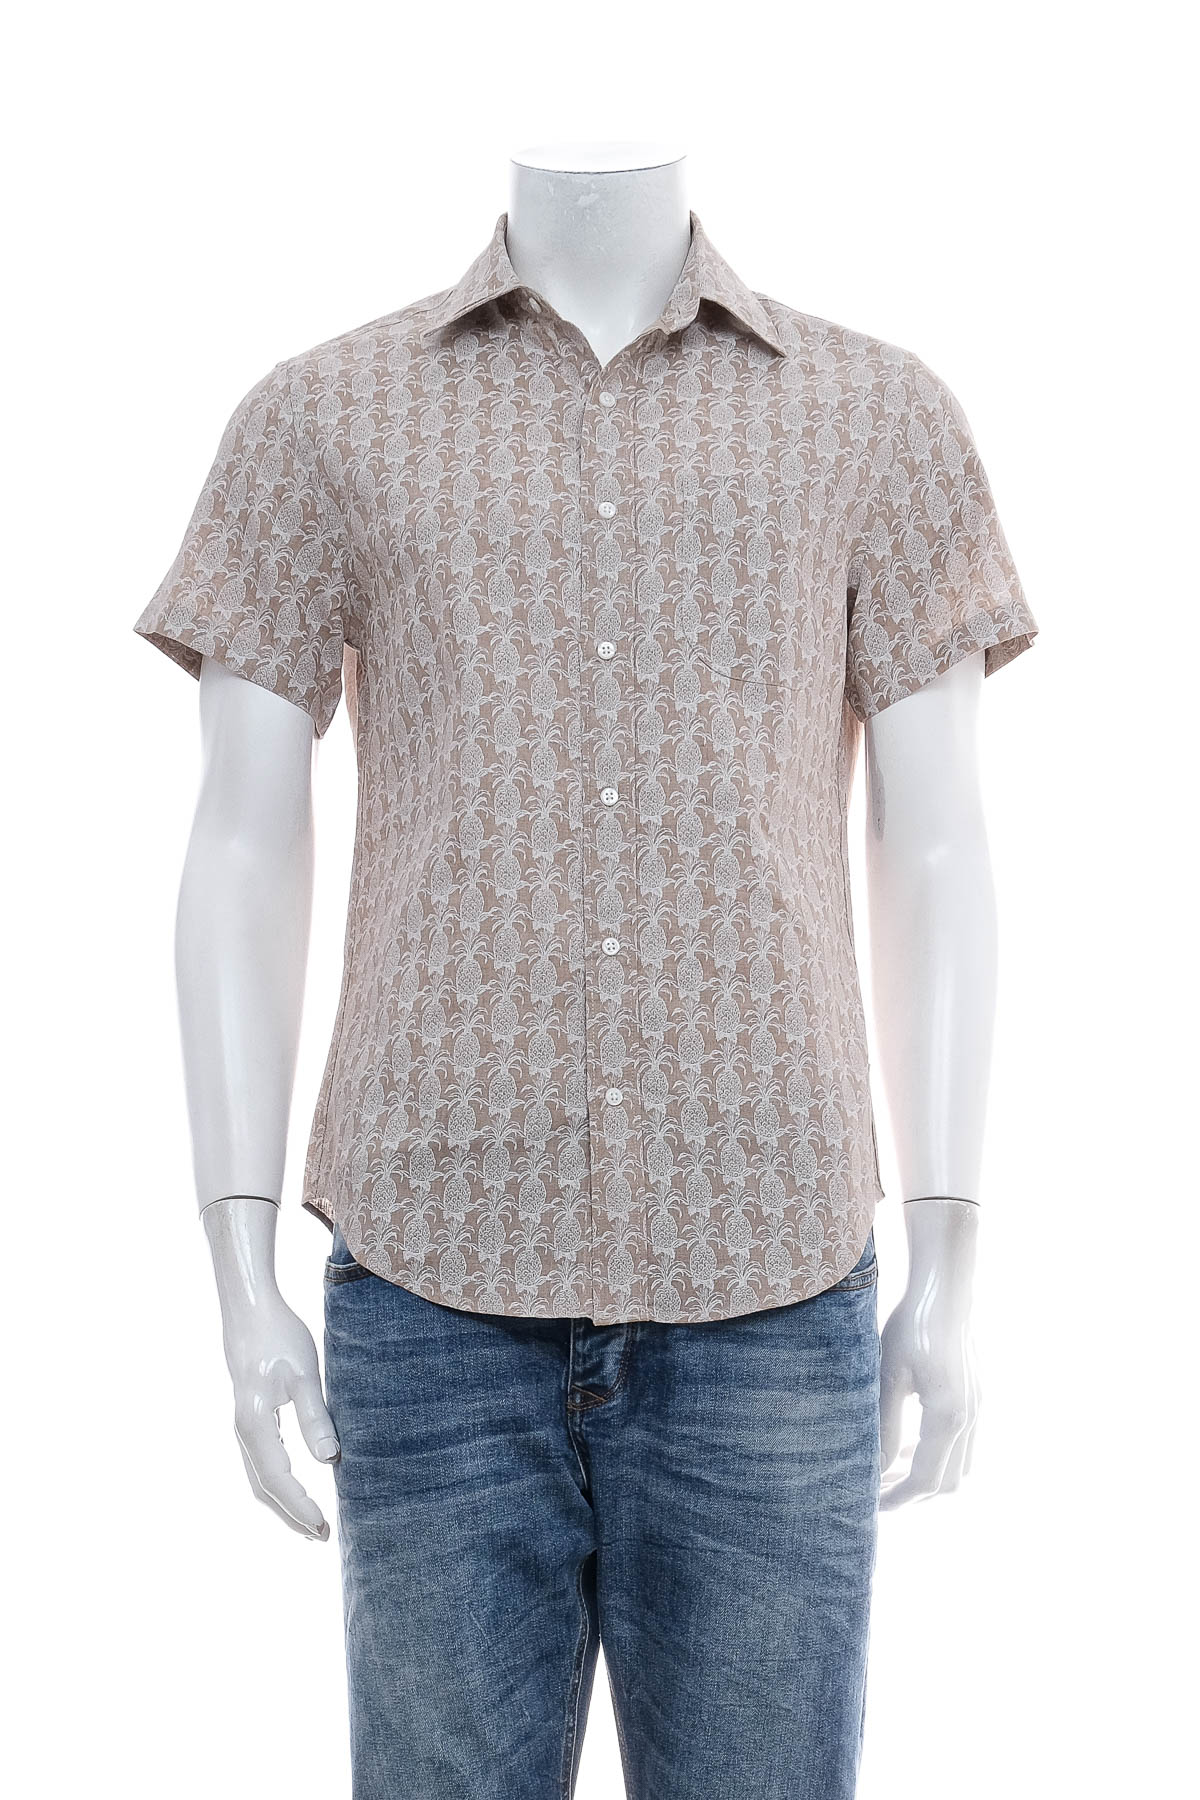 Ανδρικό πουκάμισο - J.CREW - 0